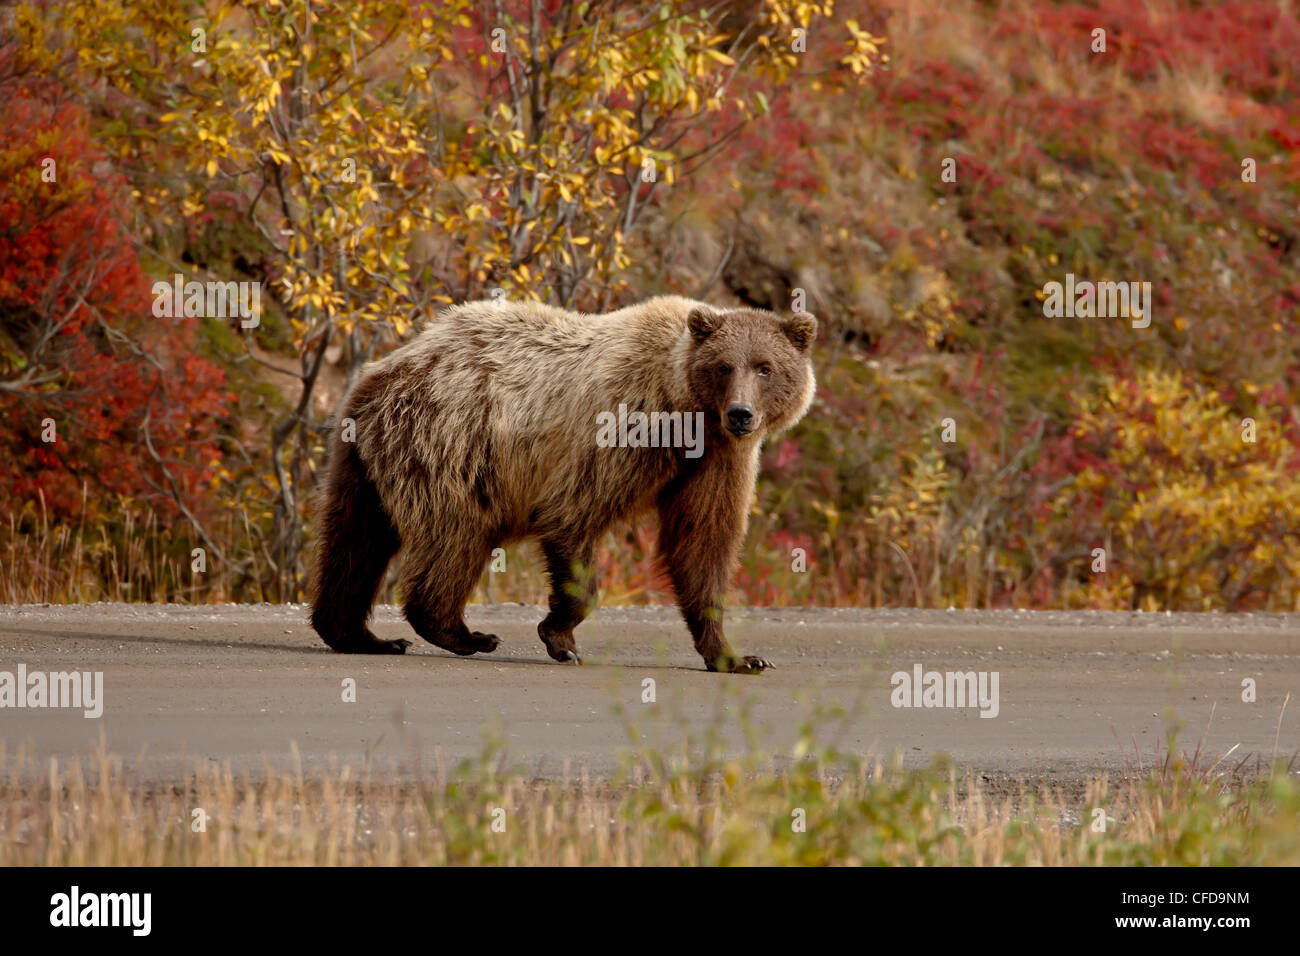 Oso grizzly (Ursus arctos horribilis) (costeras oso pardo) en una carretera, el Parque Nacional Denali y preservar, Alaska, EE.UU. Foto de stock